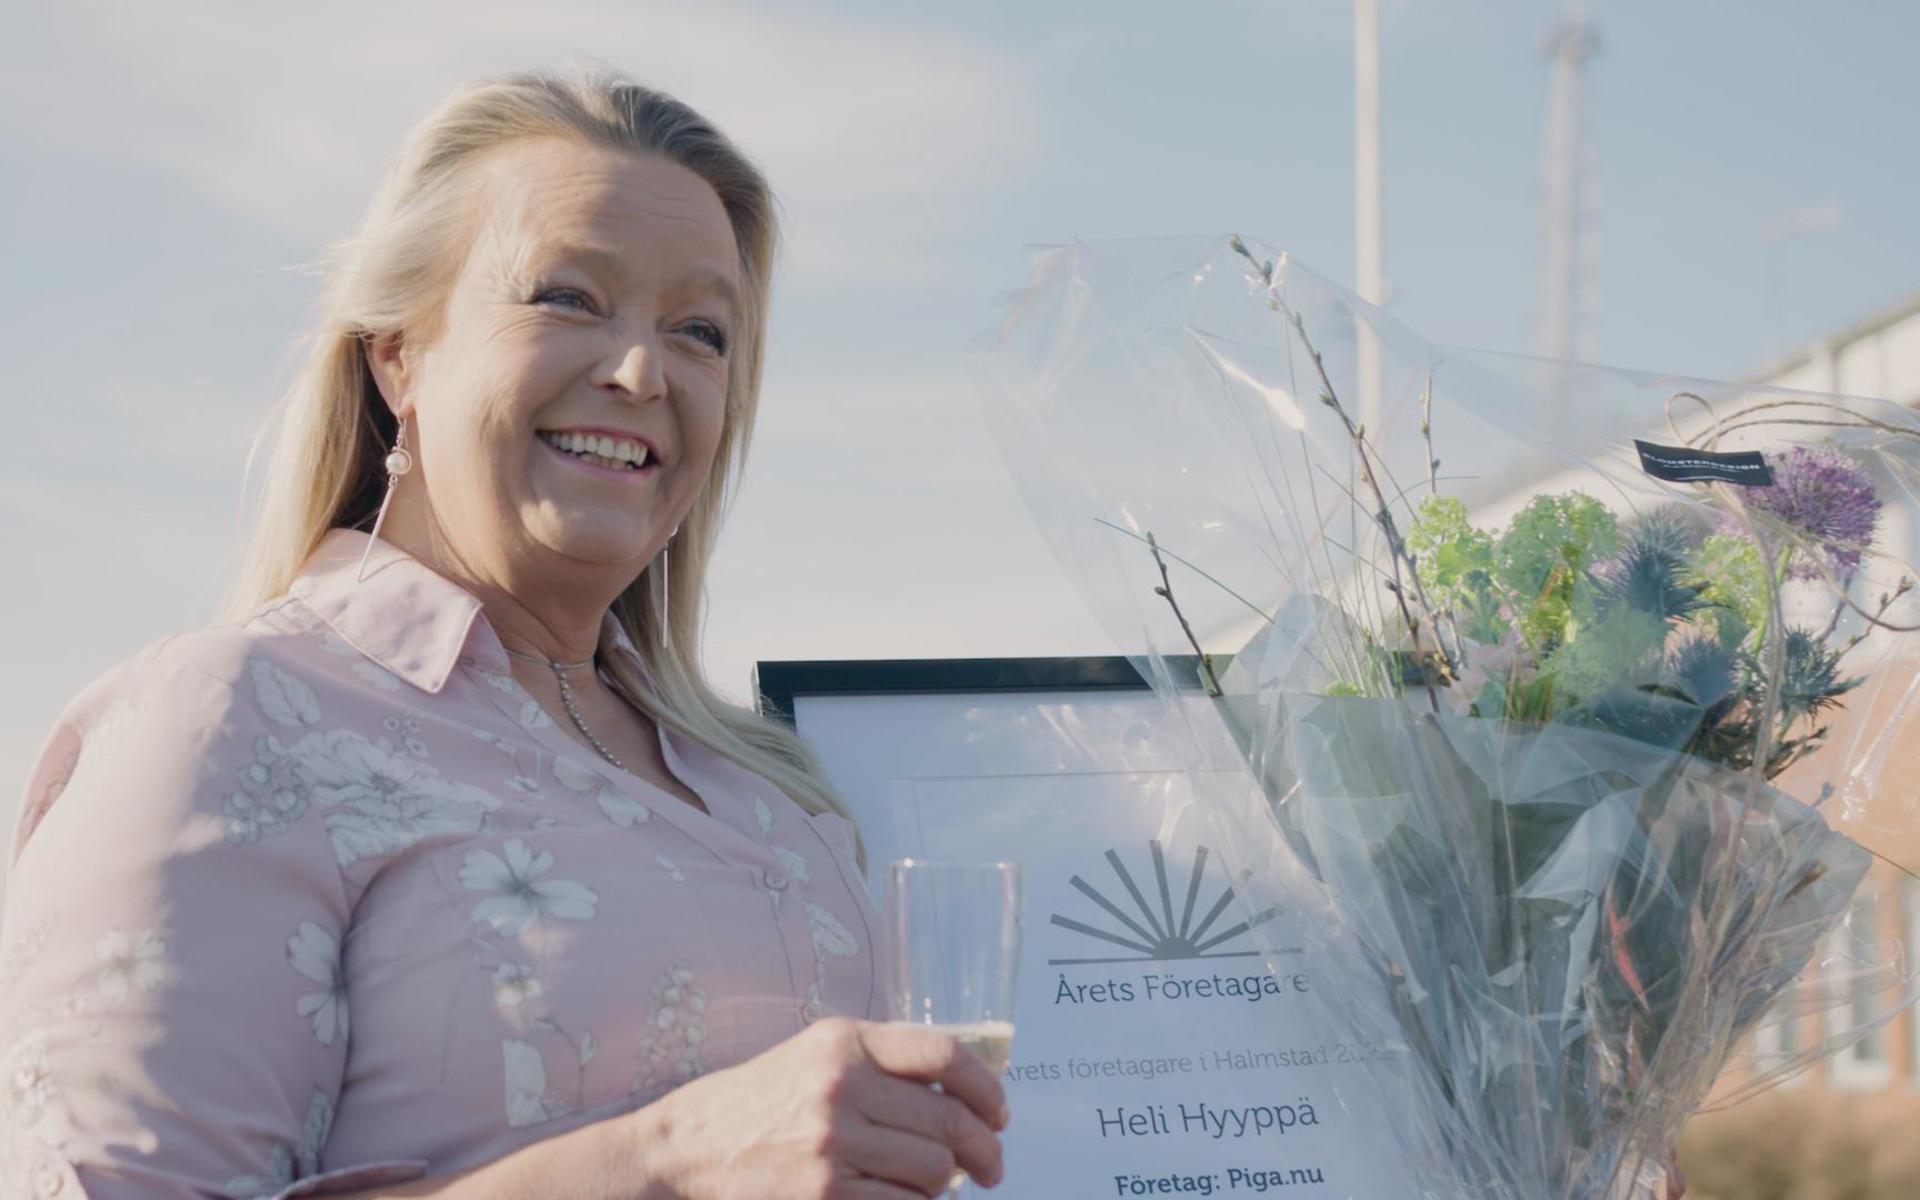 Heli Hyyppä, grundare av Piga.nu, har all anledning att vara bubblande glad efter att ha blivit utsedd till årets företagare i Halmstad.